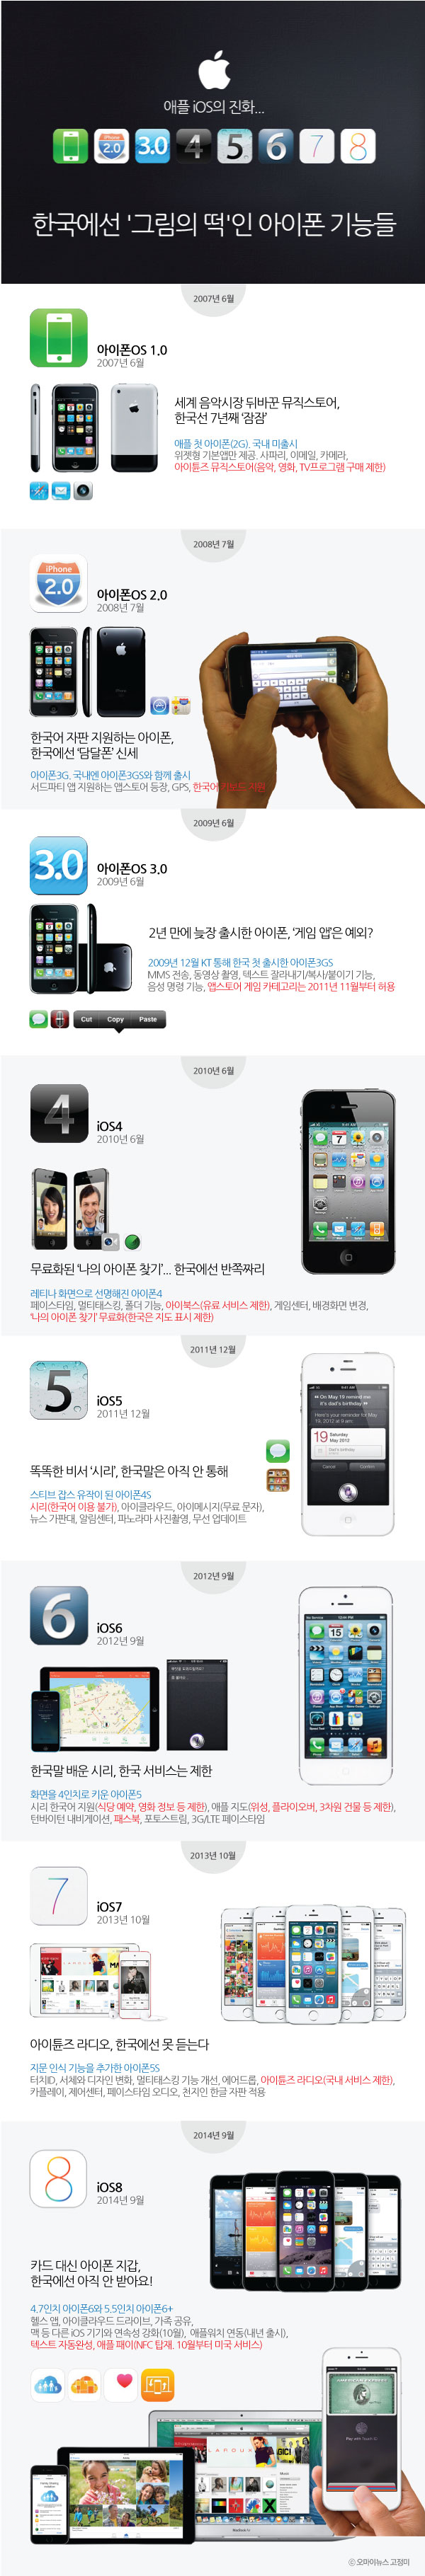 한국에선 '그림의 떡'인 아이폰 기능들